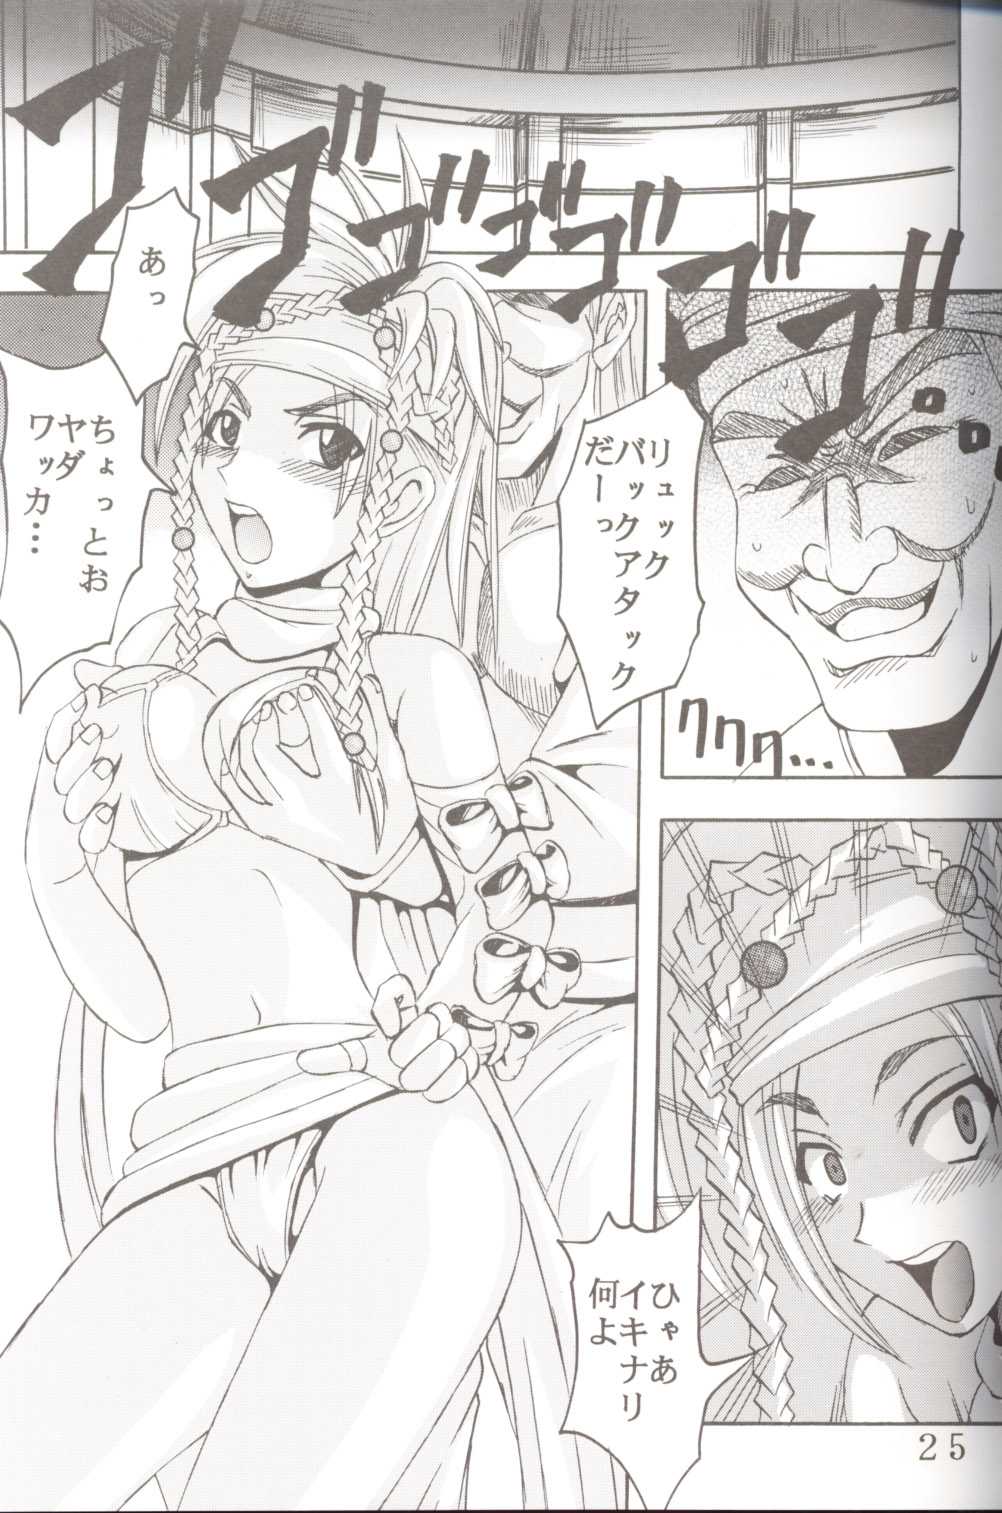 [St. Rio] Yuna A La Mode 06 (Final Fantasy 10-2) 